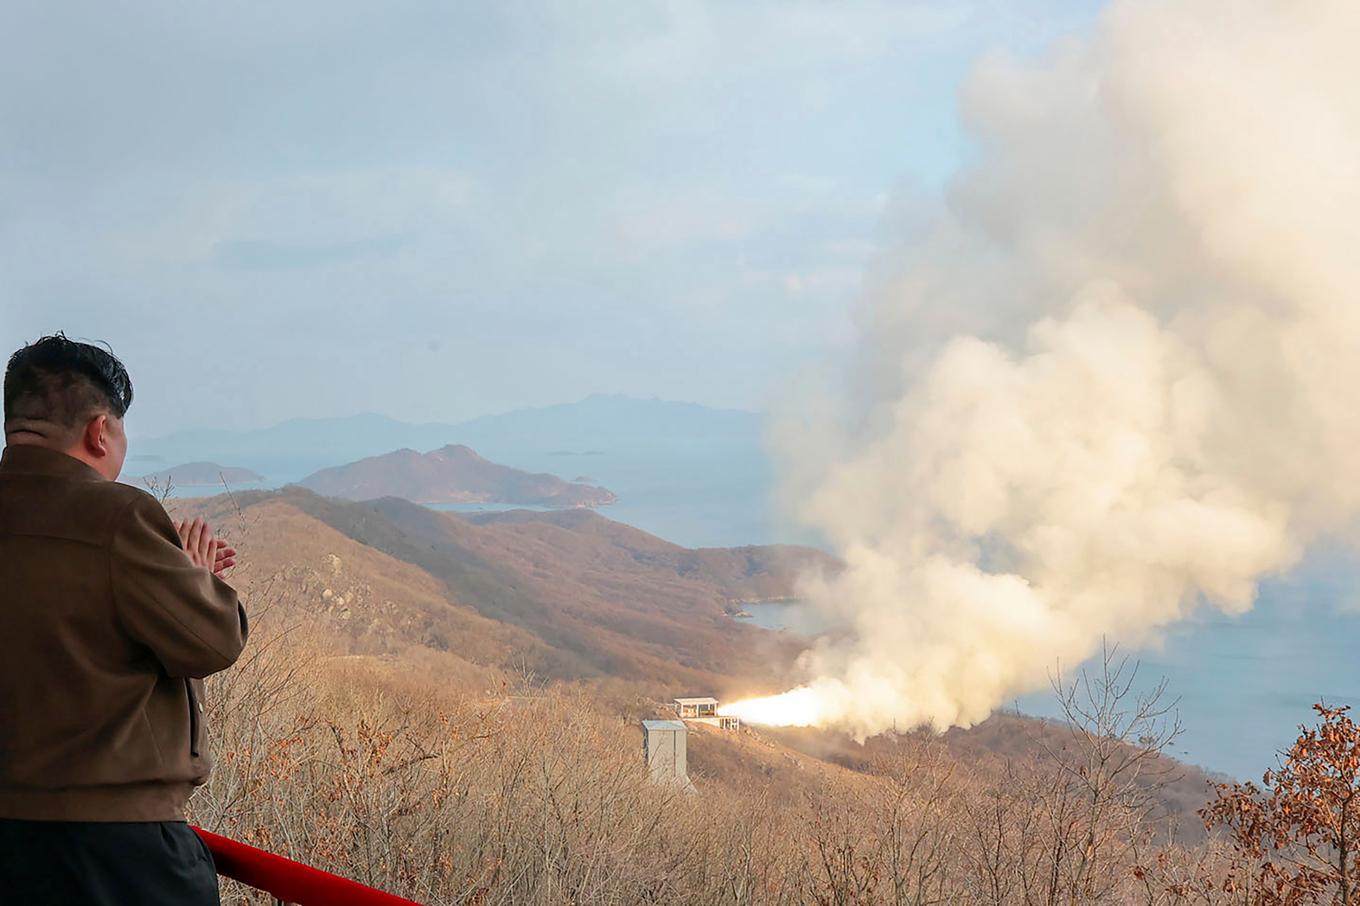 Nordkoreas ledare Nordkoreas ledare Kim Jong-Un följer vad som uppges vara ett test av ett hypersoniskt vapen. Foto: Korean Central News Agency/Korea News Service via AP/TT